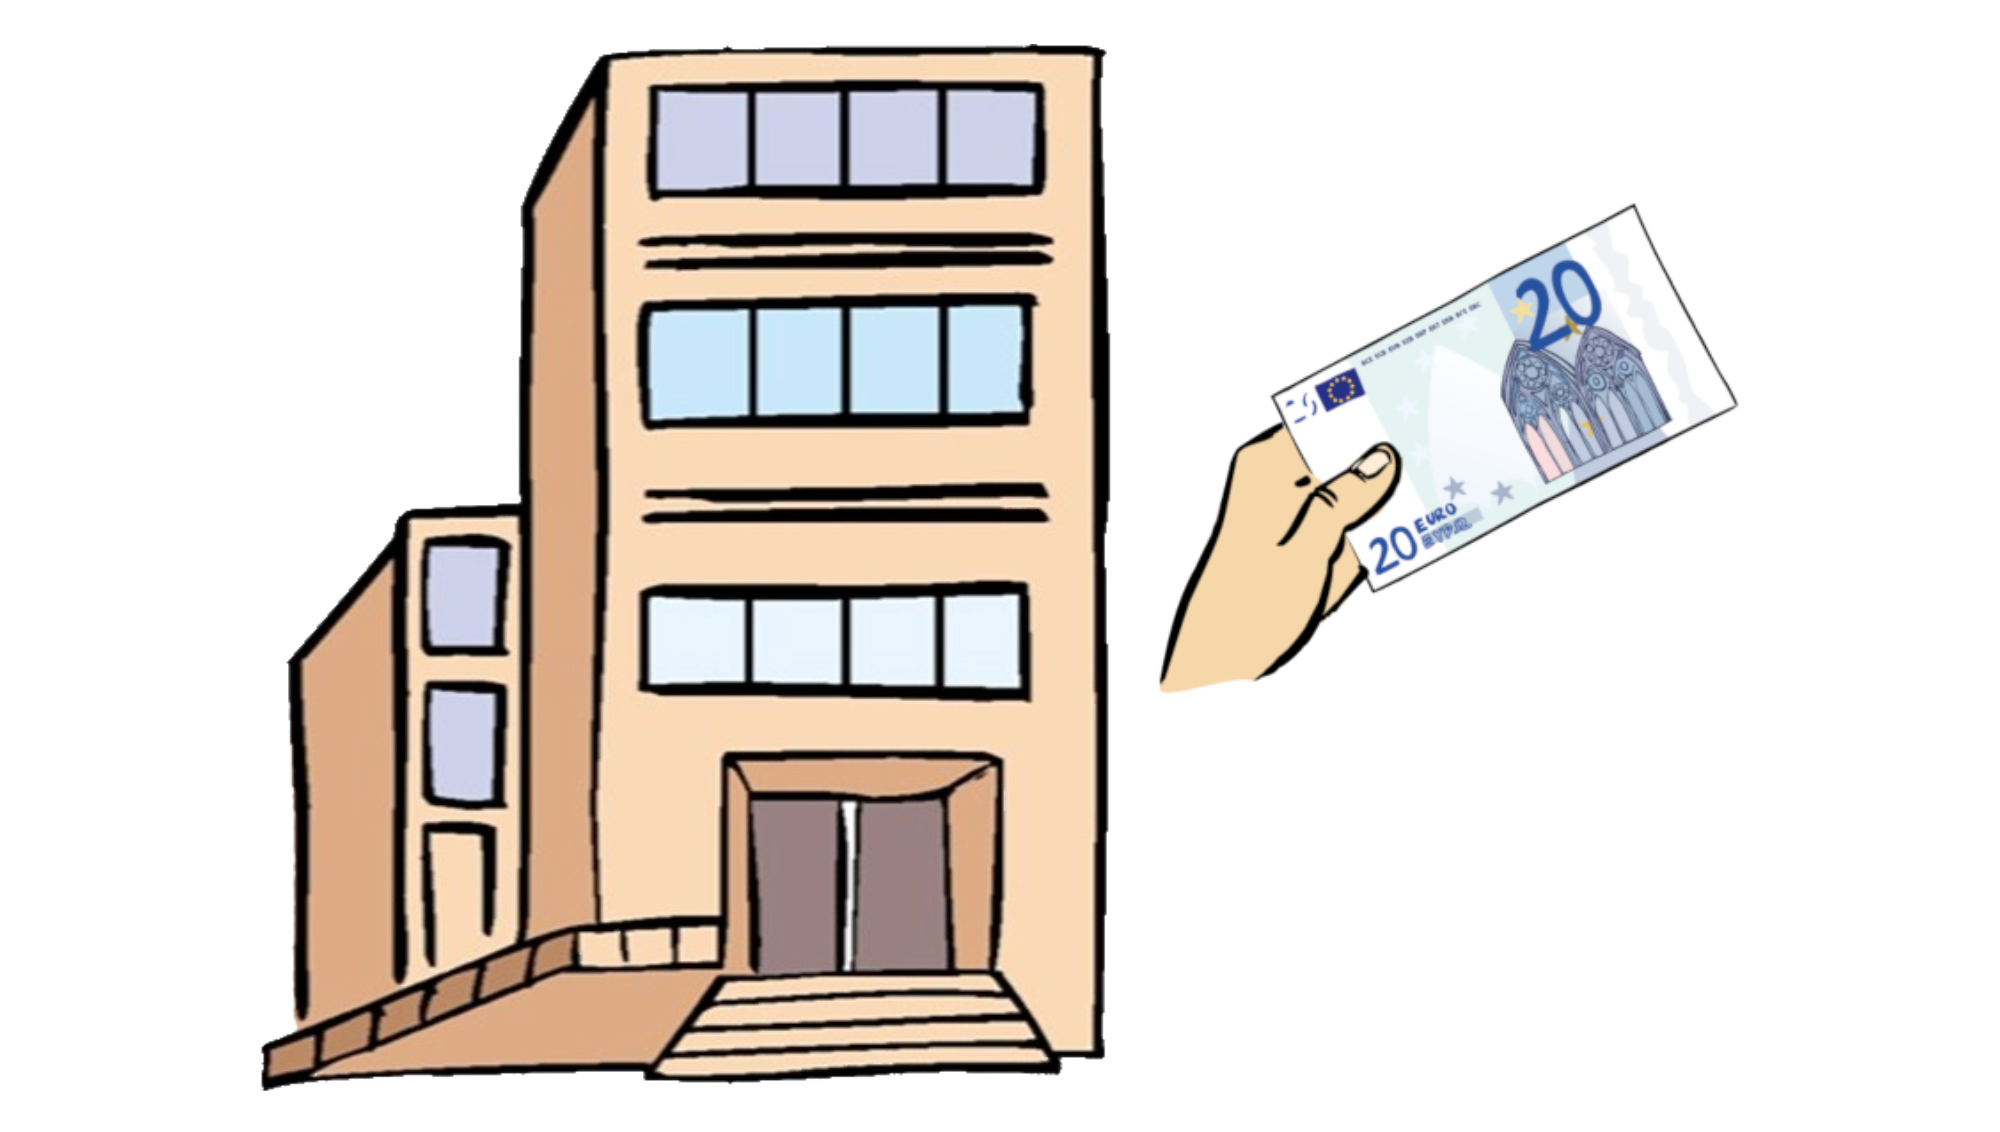 Grafik: Ein Hochhaus mit großem Eingangsbereich. Rechts davon eine Hand mit einem zwanzig Euro Geldschein.